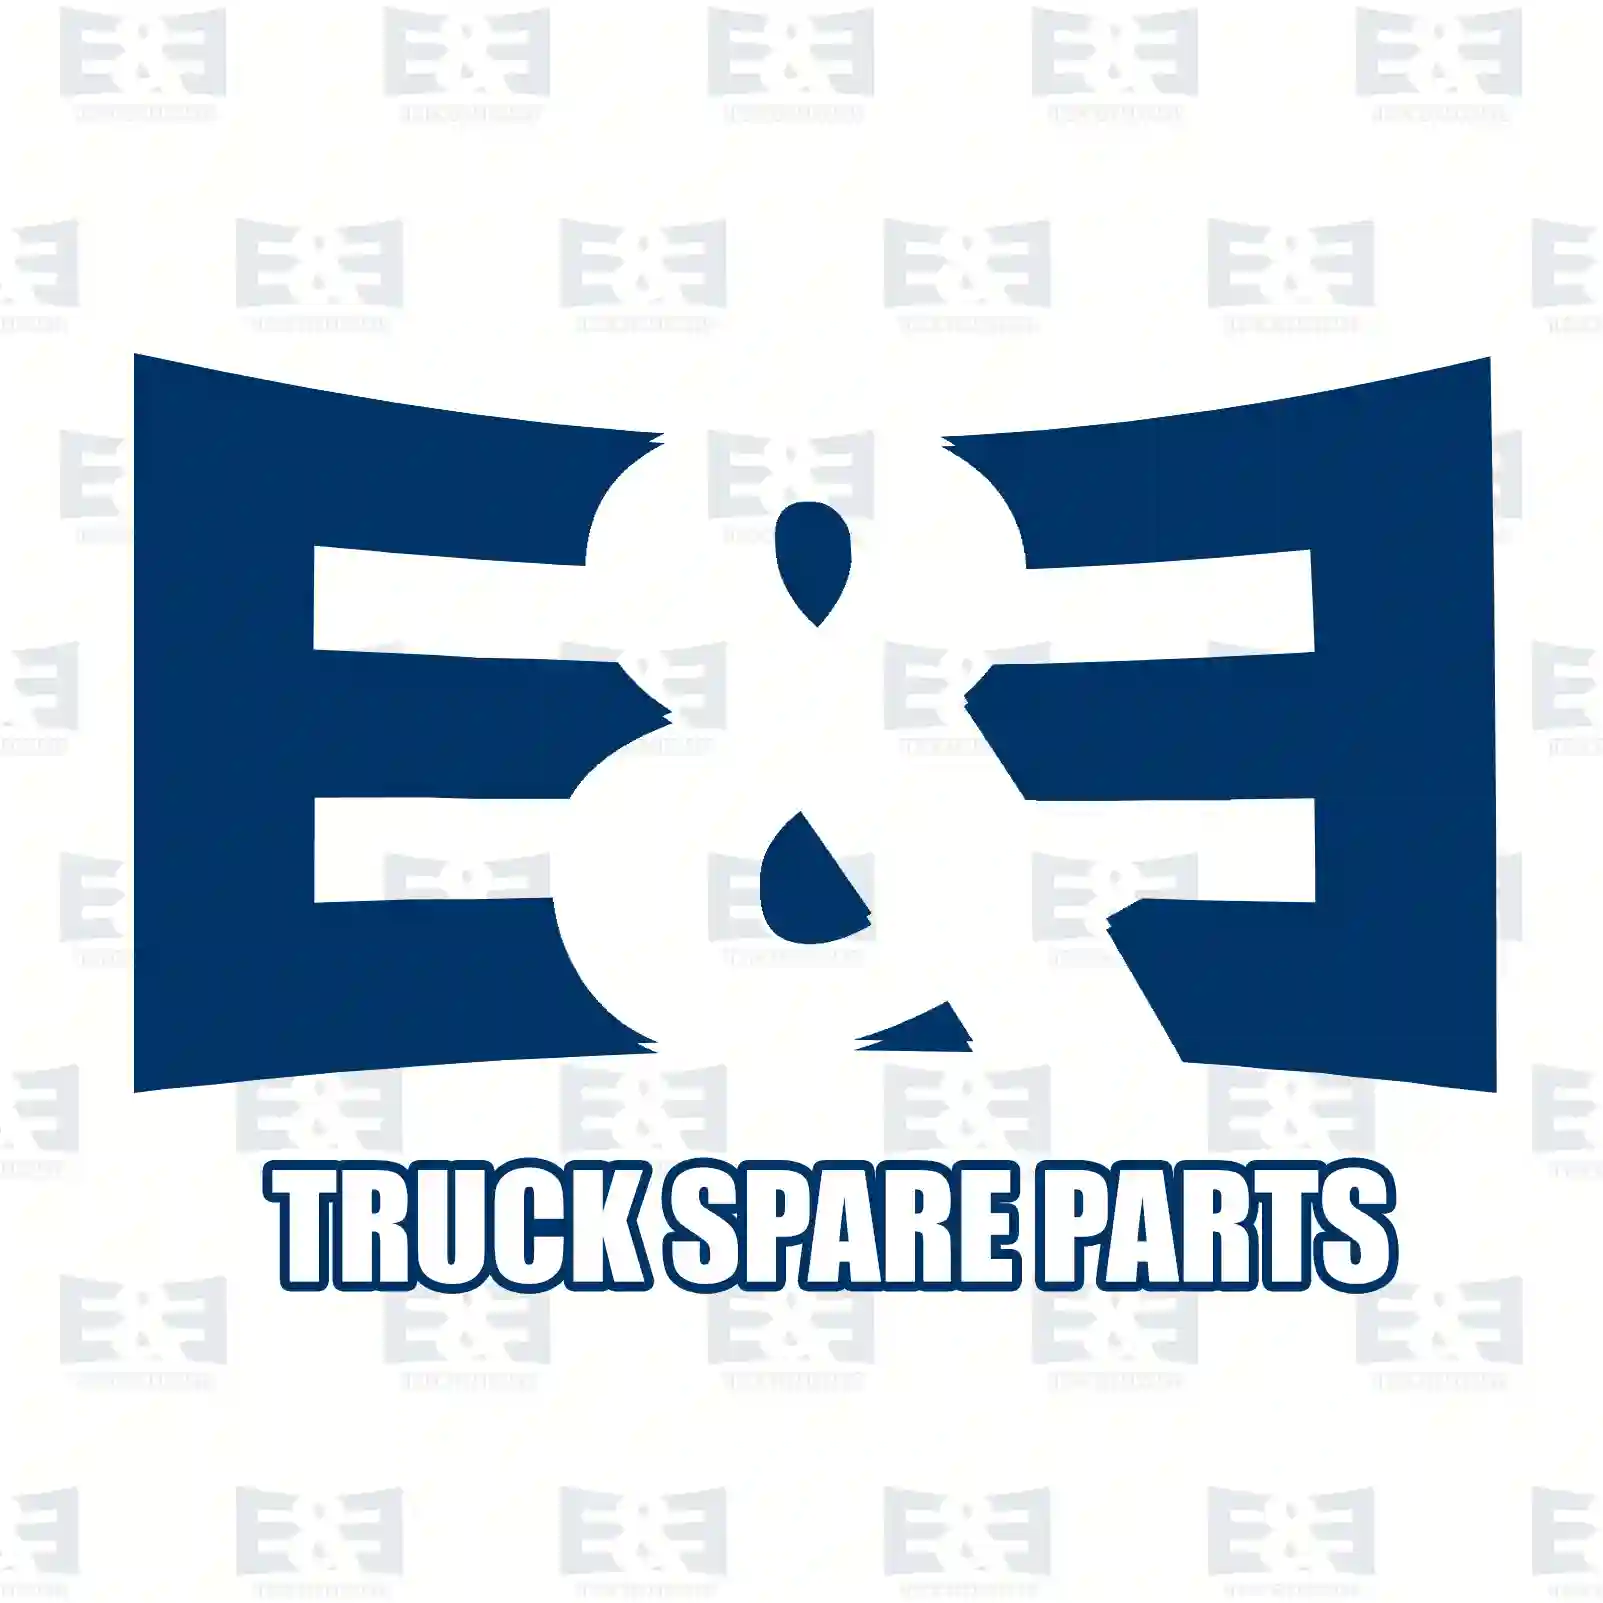 Belt tensioner, 2E2203518, 7408149855, 8149855, ZG00924-0008 ||  2E2203518 E&E Truck Spare Parts | Truck Spare Parts, Auotomotive Spare Parts Belt tensioner, 2E2203518, 7408149855, 8149855, ZG00924-0008 ||  2E2203518 E&E Truck Spare Parts | Truck Spare Parts, Auotomotive Spare Parts